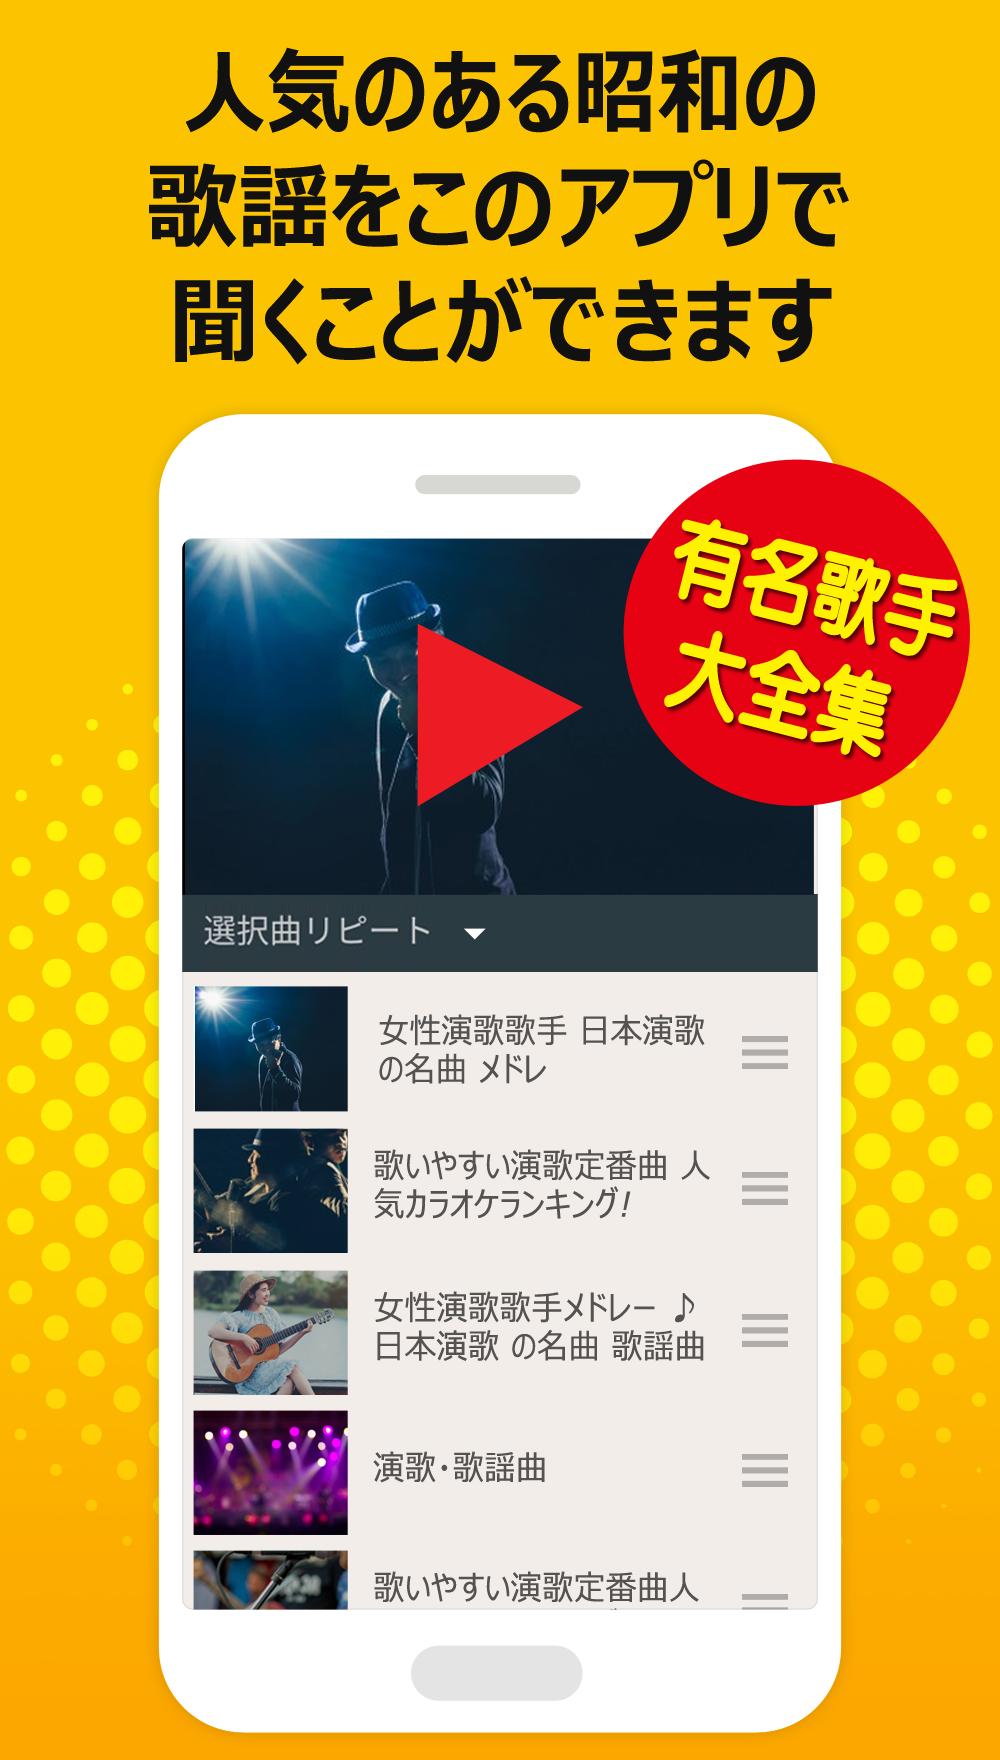 昭和の名曲 女性編 完全無料 人気歌謡曲 For Android Apk Download